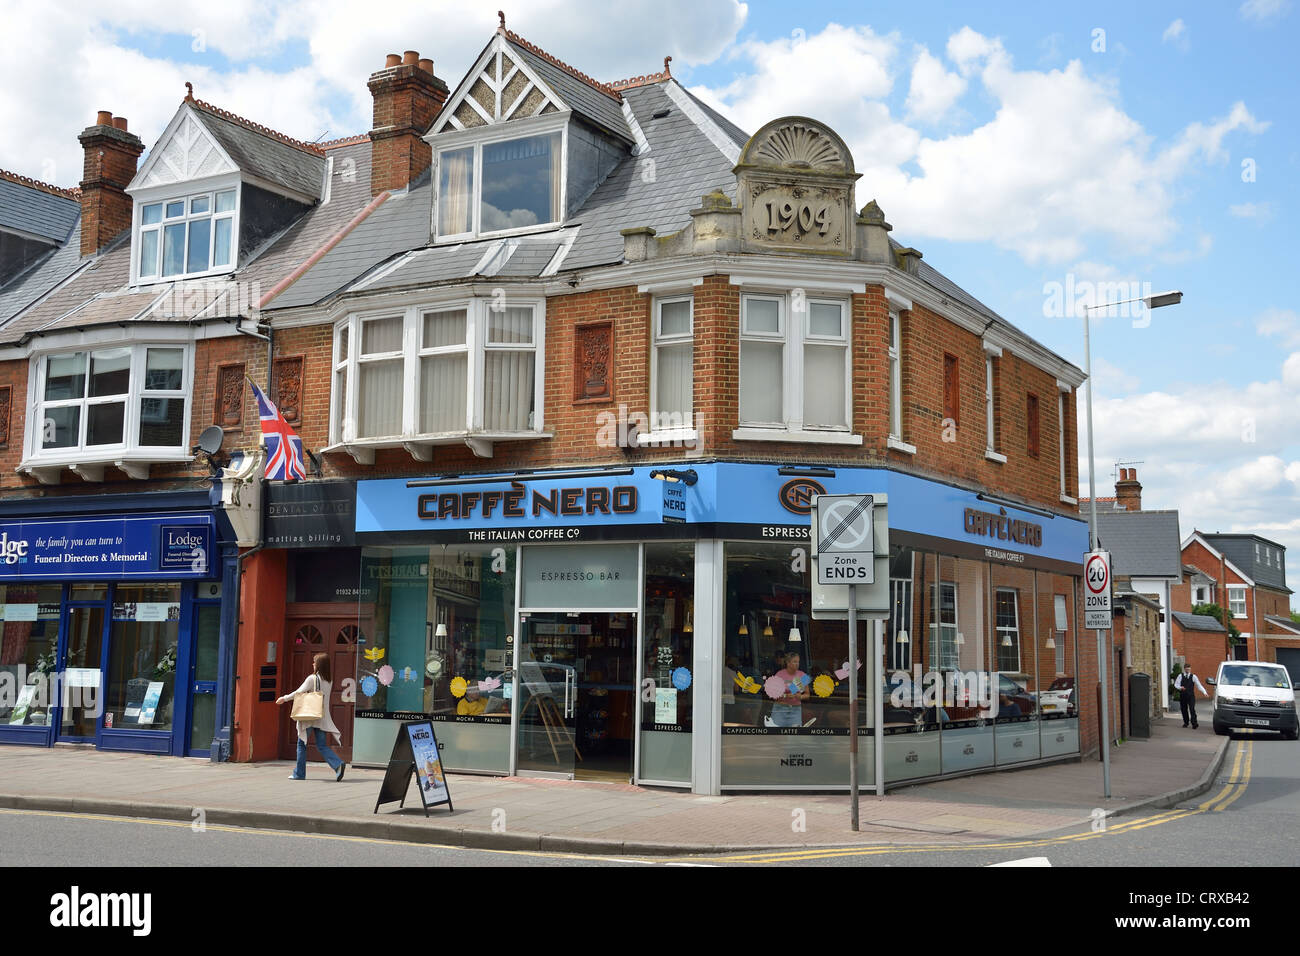 Cafe Nero, High Street, Weybridge, Surrey, England, United Kingdom Stock Photo